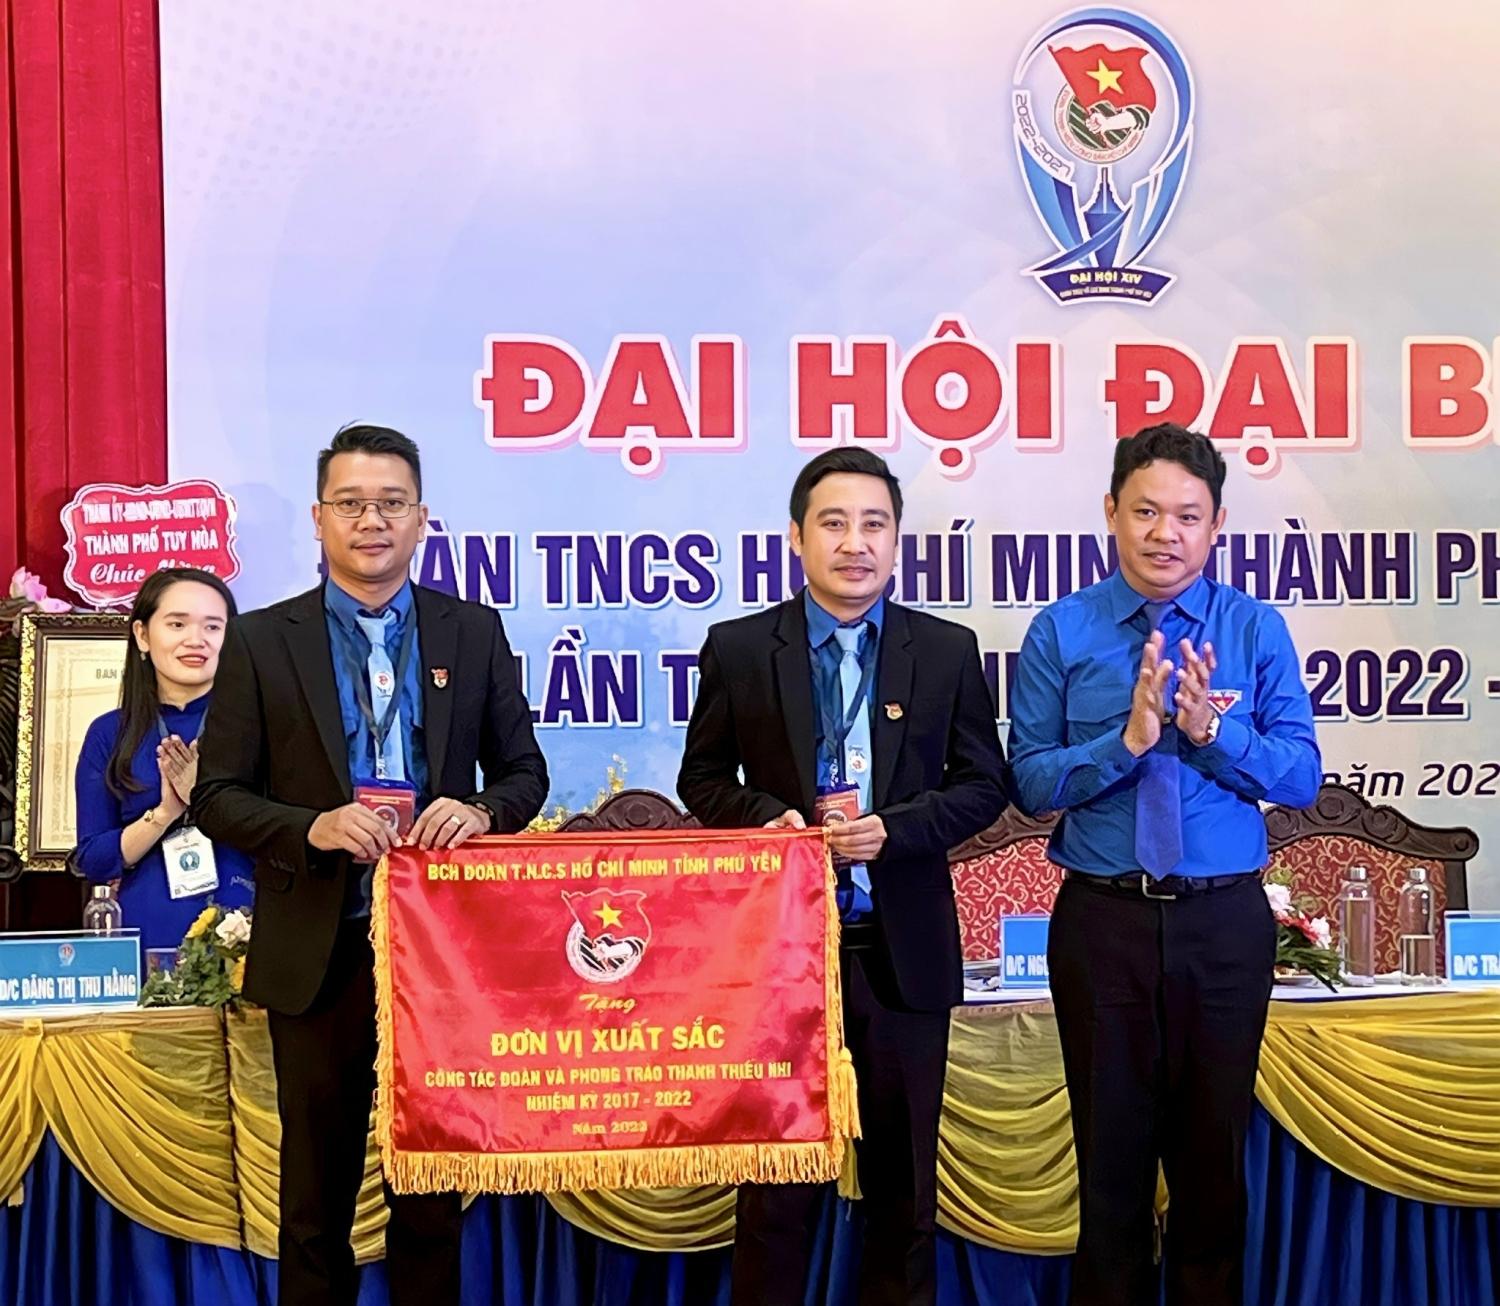 Đồng chí Phan Xuân Hạnh - UV BCH Trung ương Đoàn, Tỉnh ủy viên, Bí thư Tỉnh Đoàn tặng cờ đơn vị xuất sắc công tác đoàn và phong trào thanh thiếu nhi nhiệm kỳ 2017-2022 cho Thành Đoàn Tuy Hòa.